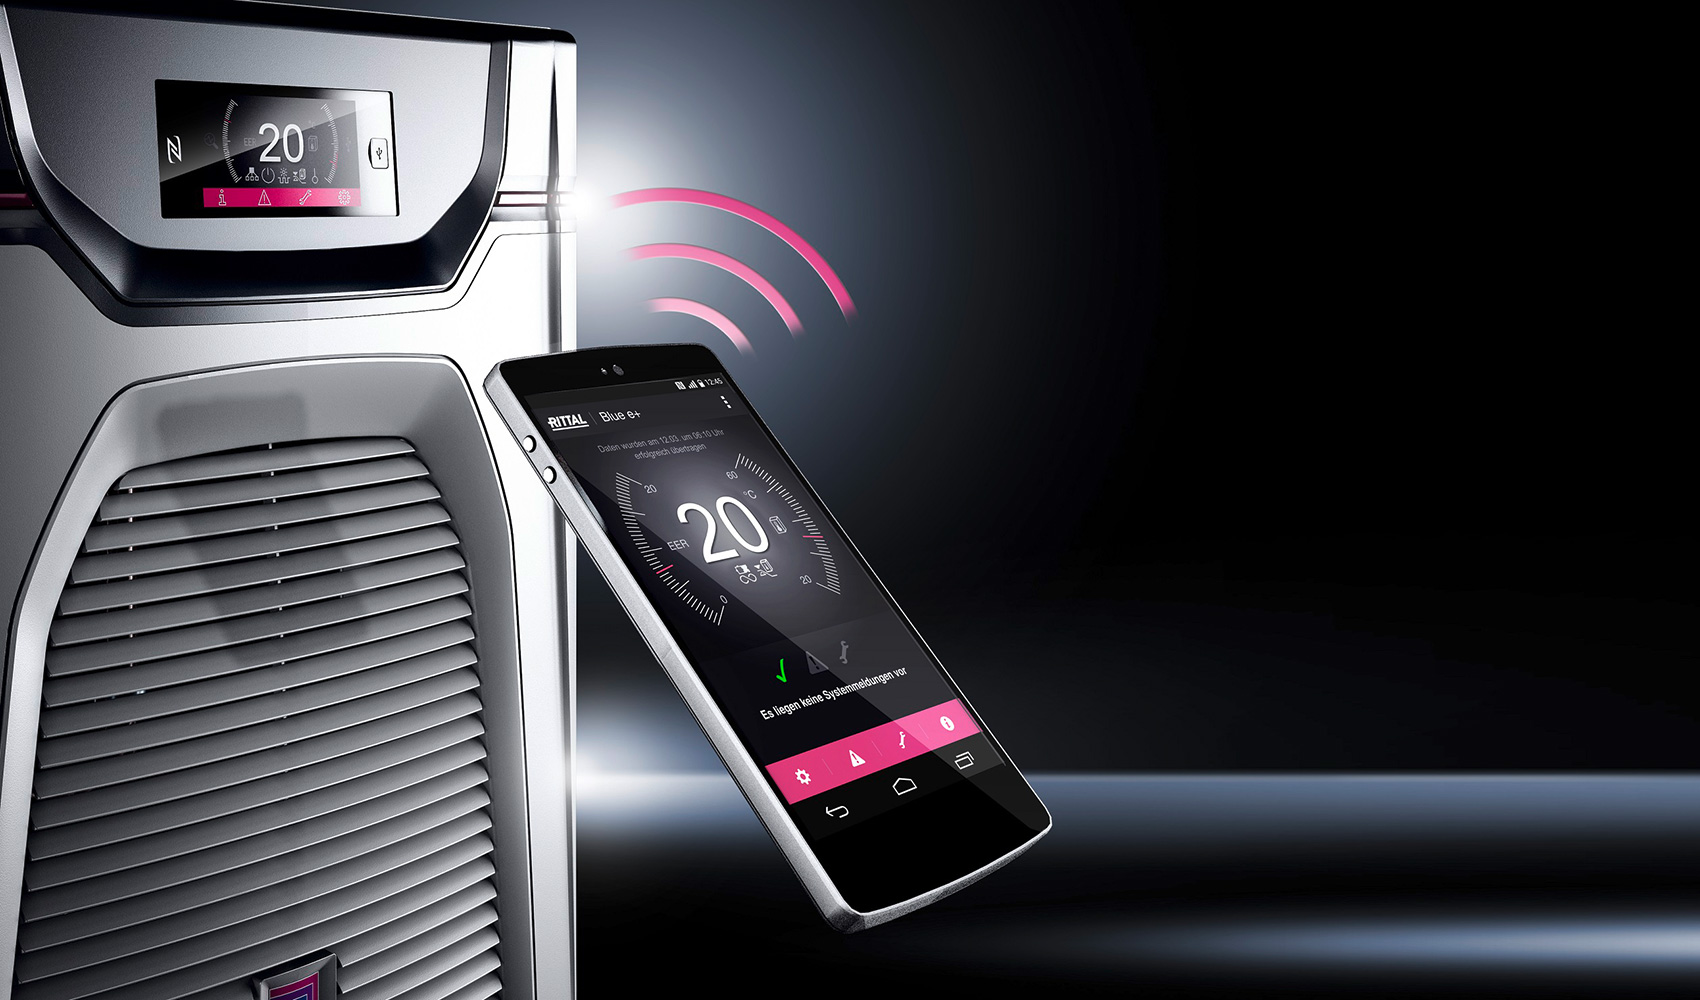 La aplicacin disponible para los refrigeradores Blue e+, que se comunica con los equipos a travs de NFC...